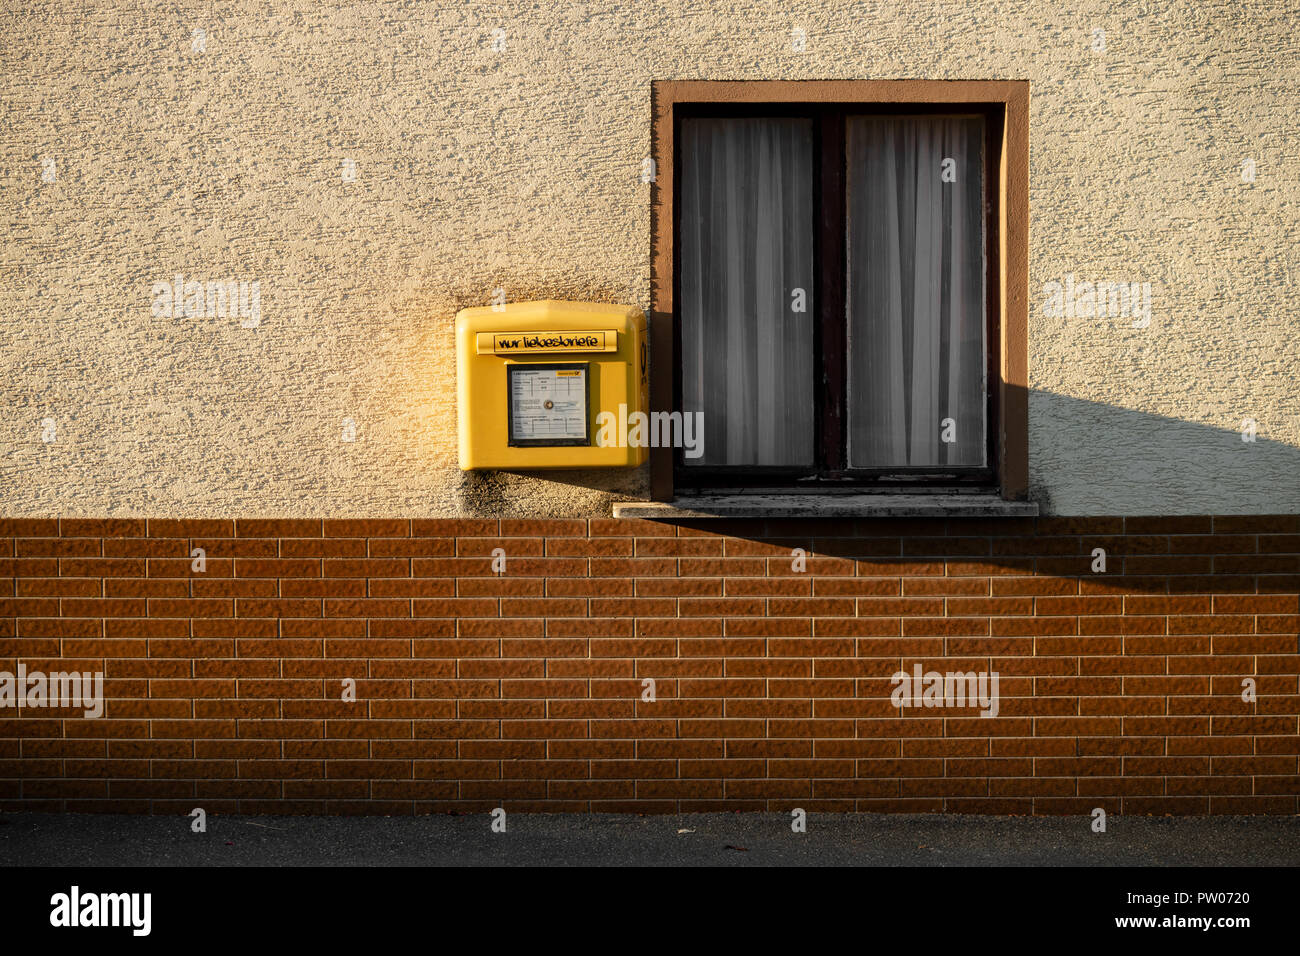 Standard gelben Briefkasten der Deutschen Post an der Wand aufhängen, neben einem Fenster Stockfoto